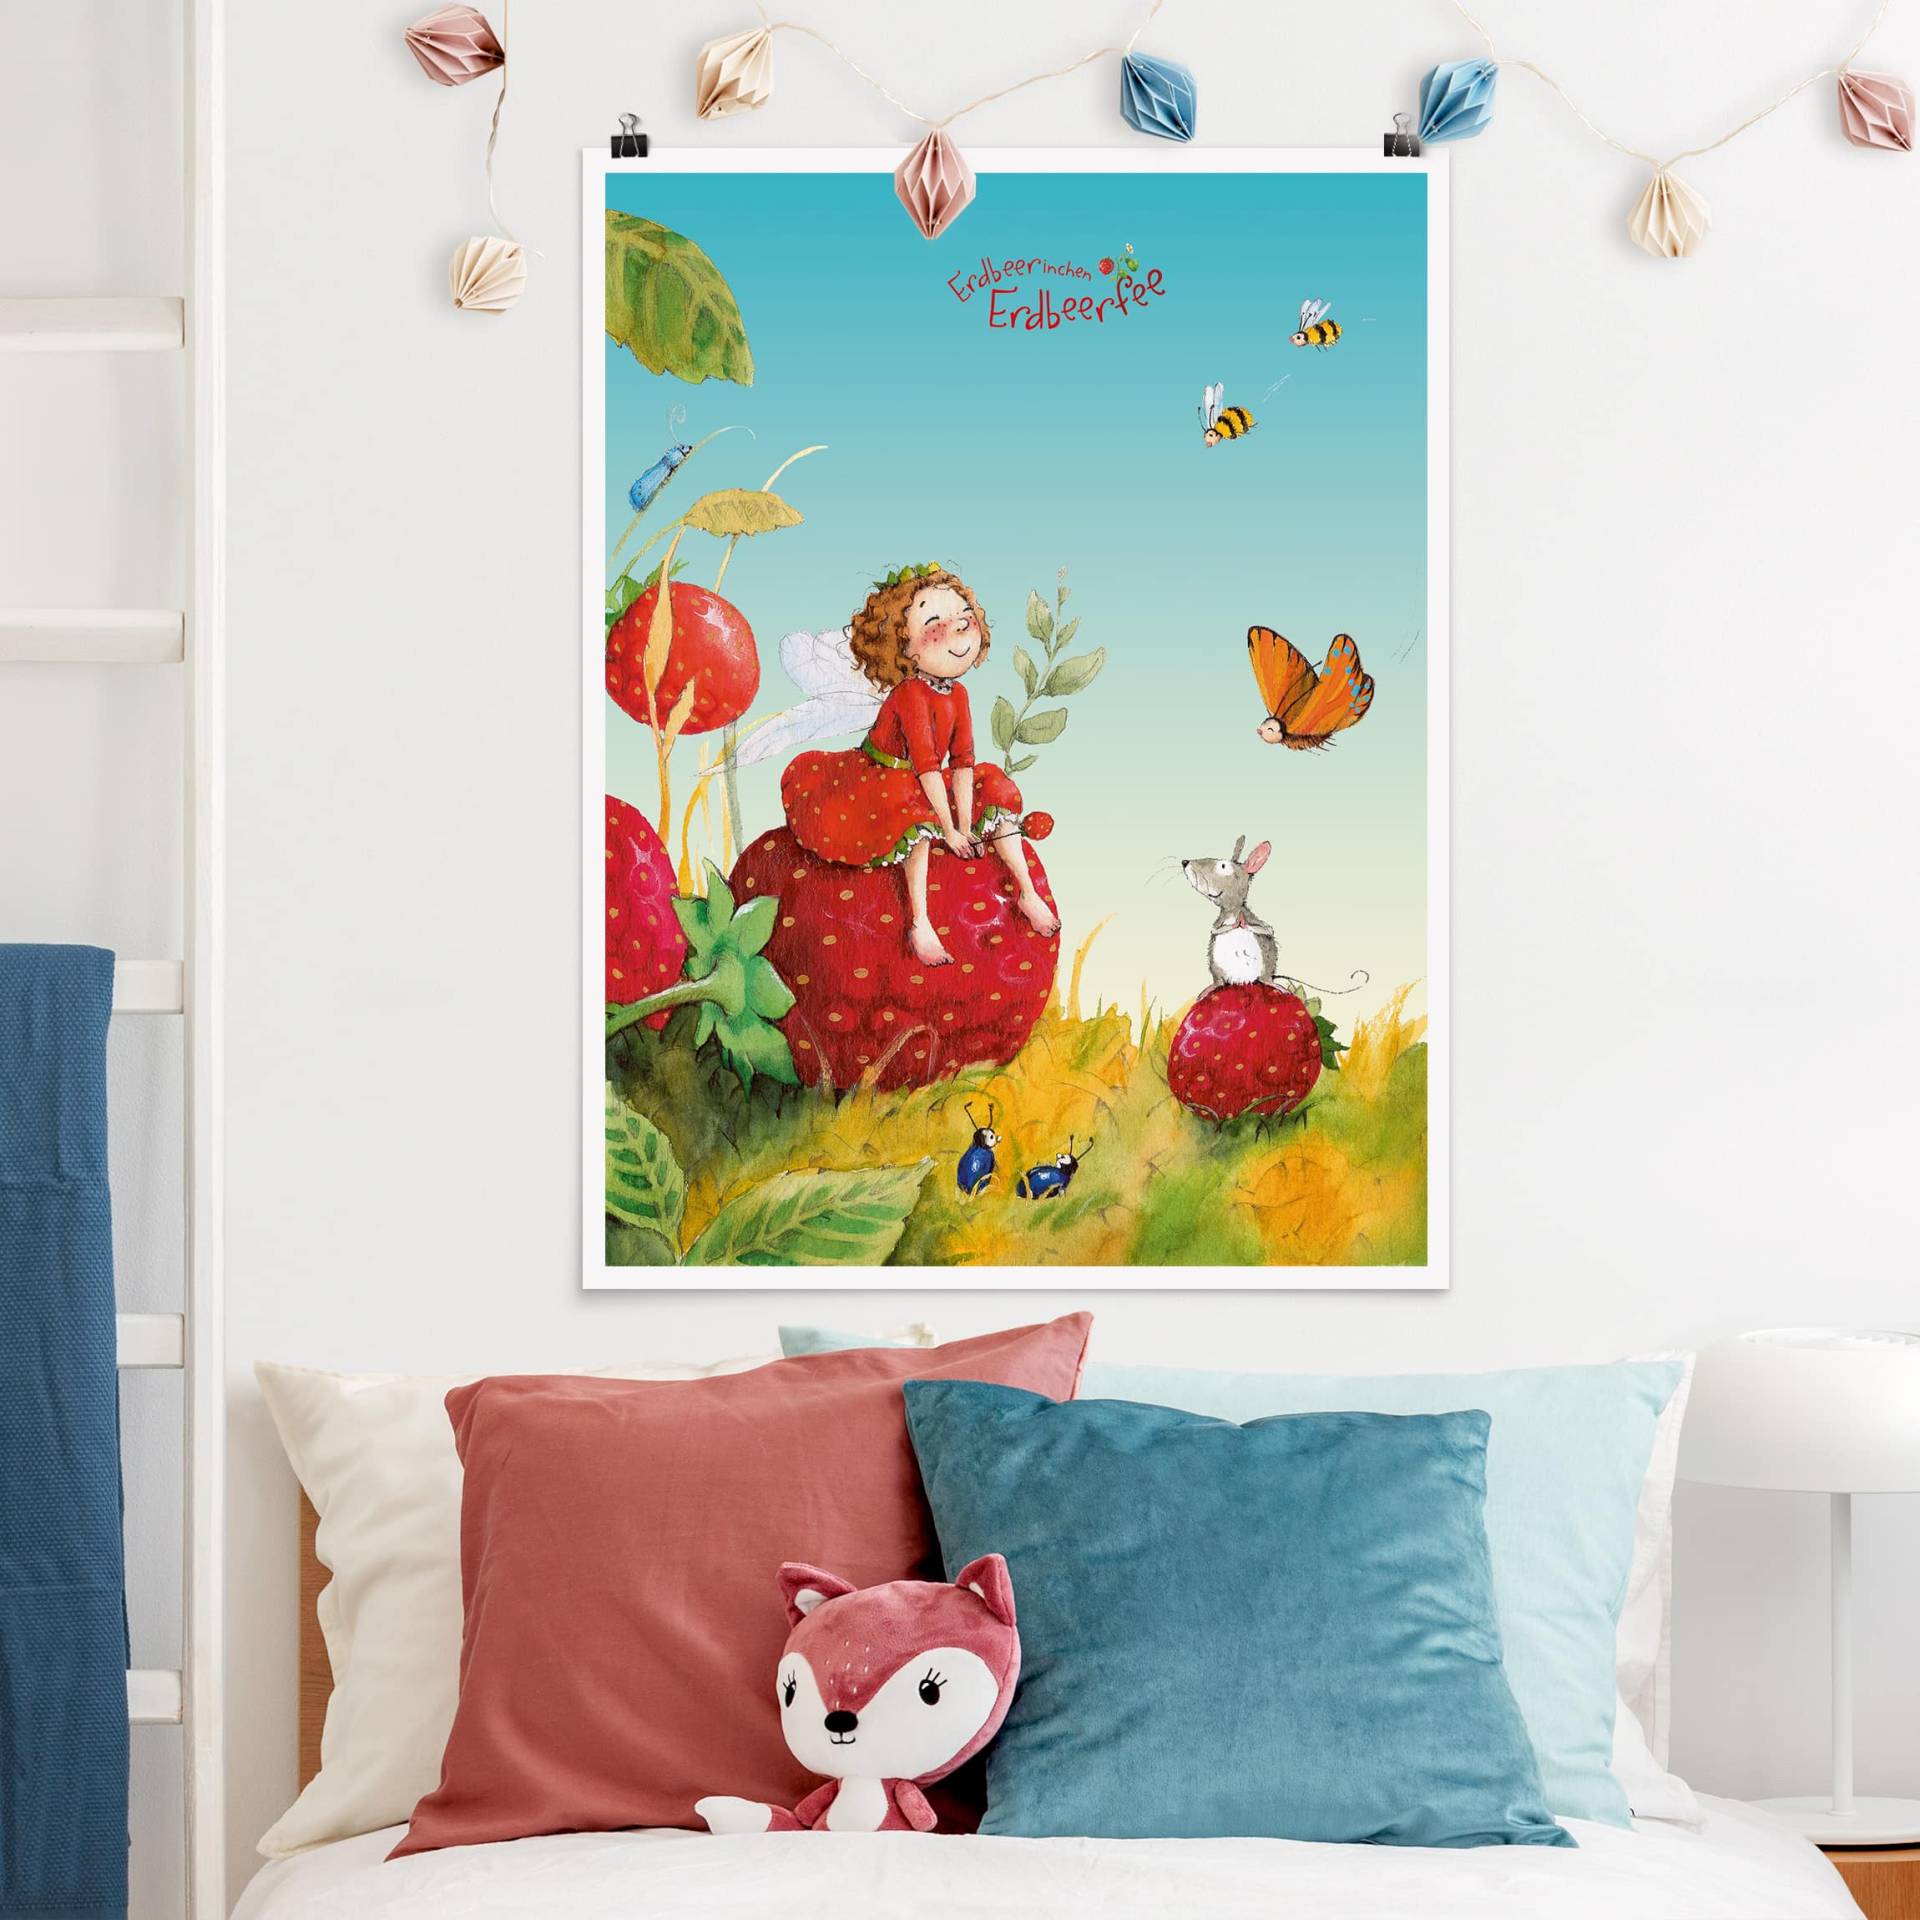 Poster Kinderzimmer Erdbeerinchen Erdbeerfee - Zauberhaft von Klebefieber